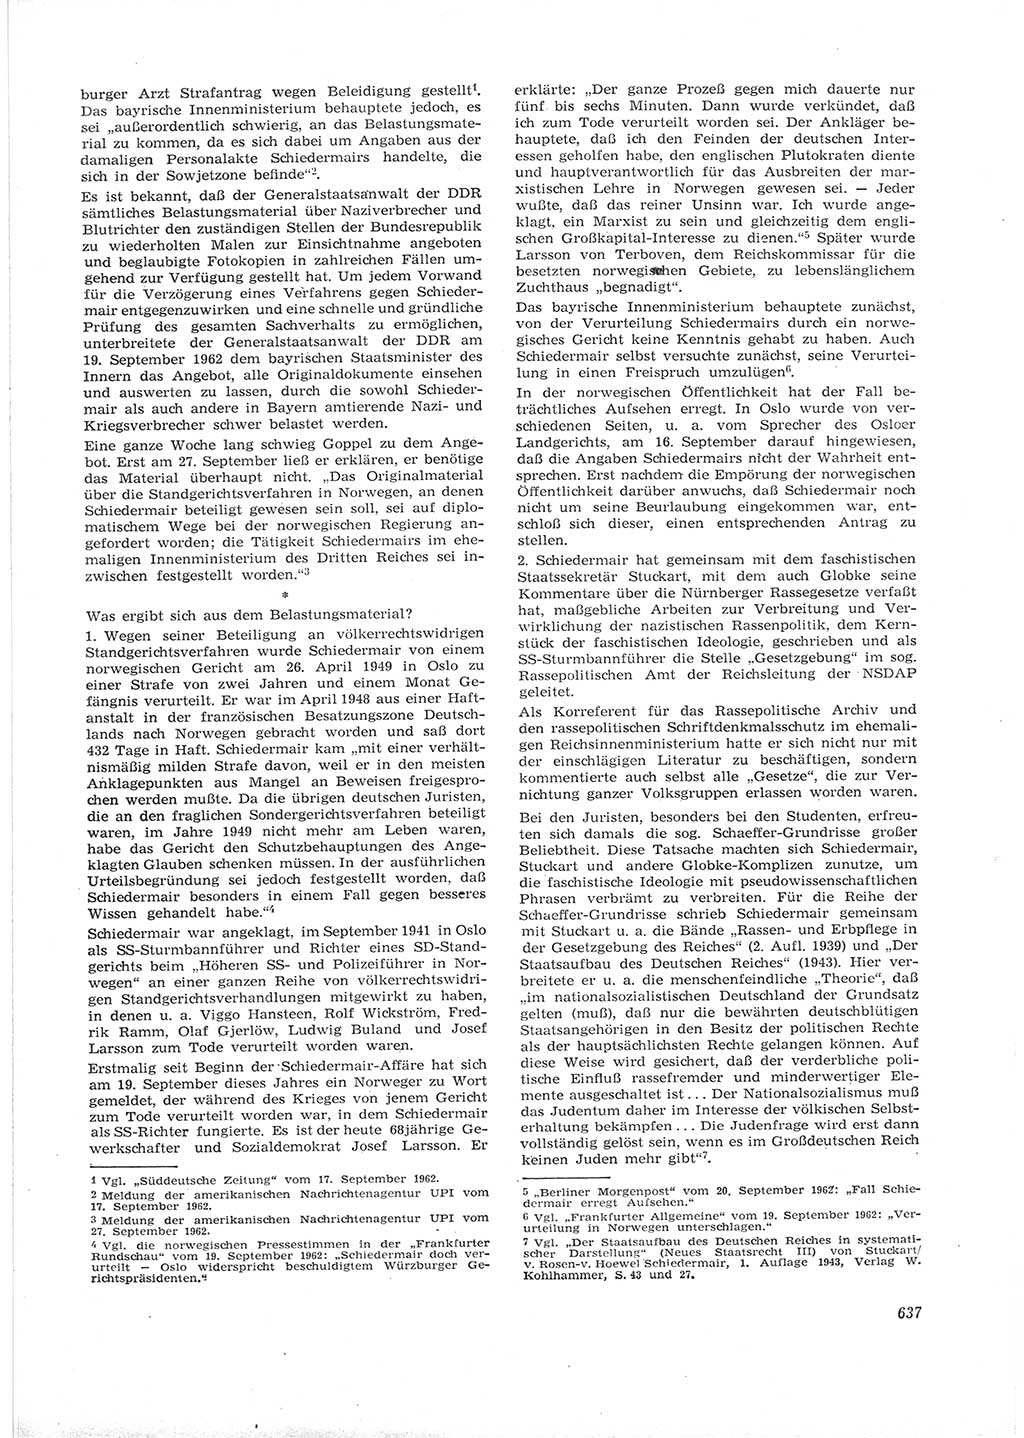 Neue Justiz (NJ), Zeitschrift für Recht und Rechtswissenschaft [Deutsche Demokratische Republik (DDR)], 16. Jahrgang 1962, Seite 637 (NJ DDR 1962, S. 637)